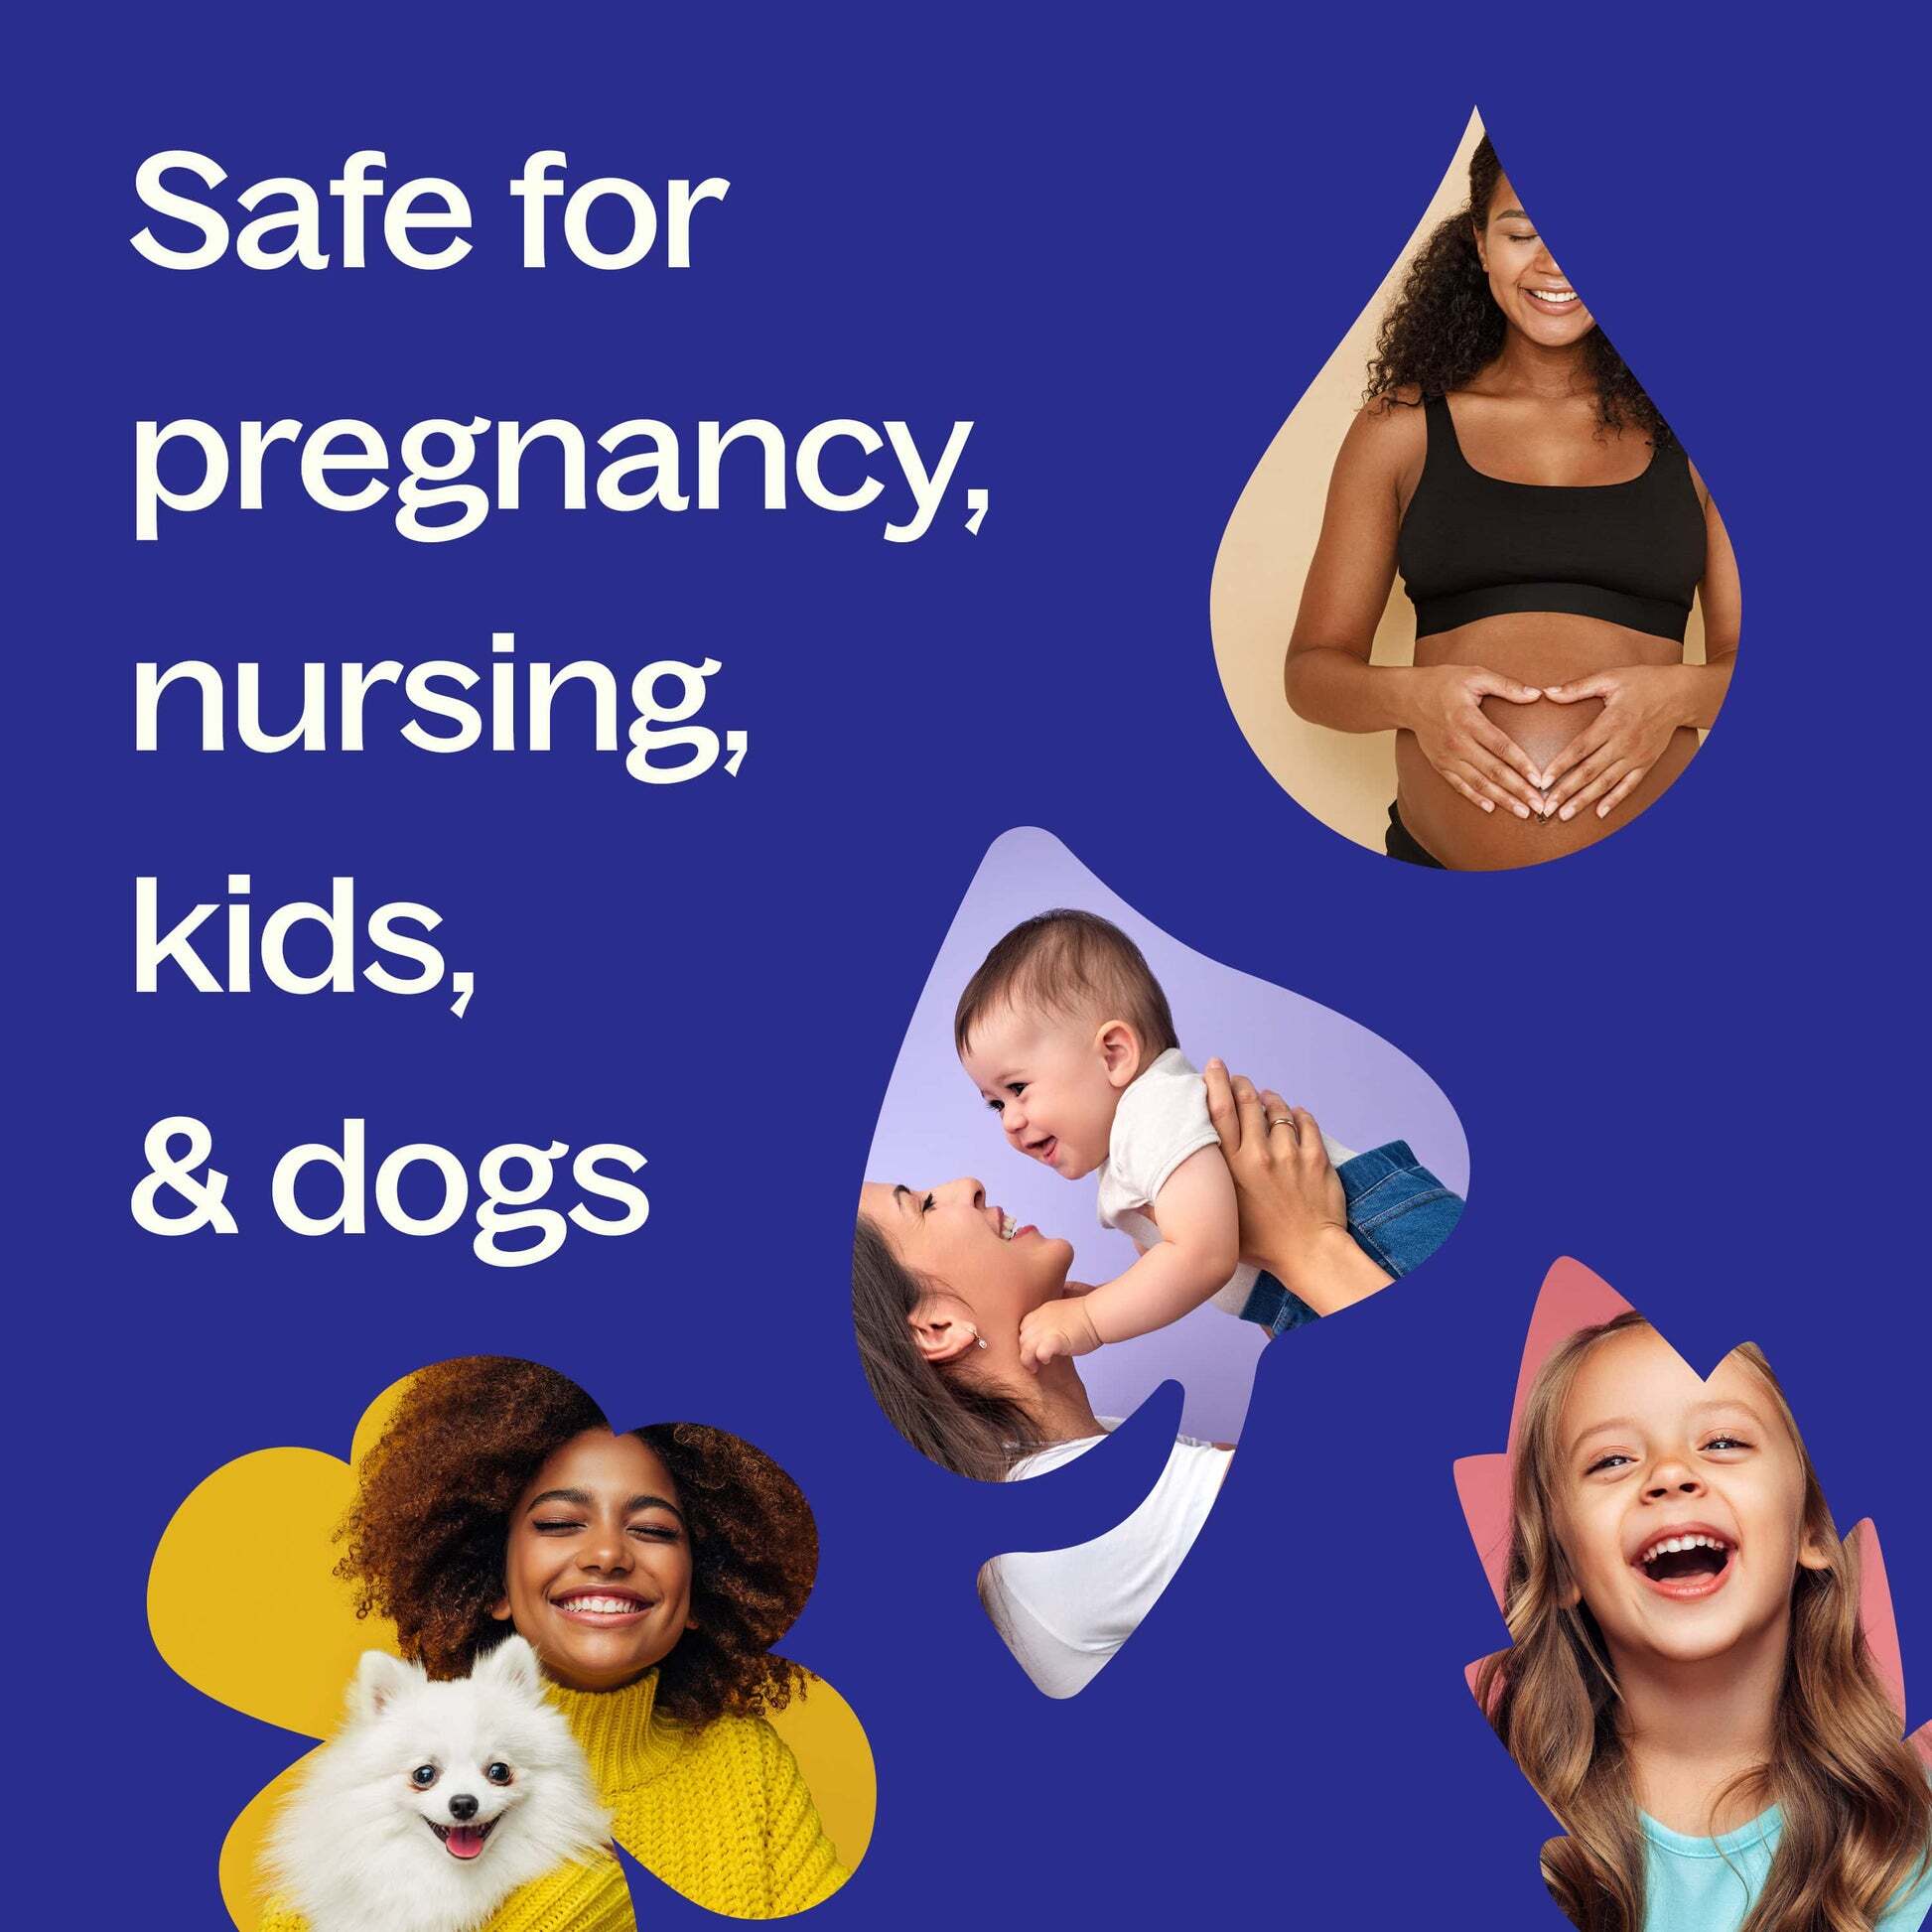 Safety-Pregnancy_Nursing_Kids_Dogs-min_2c2ce0f8-0389-478f-9d53-8c9744a3f6fc_1946x